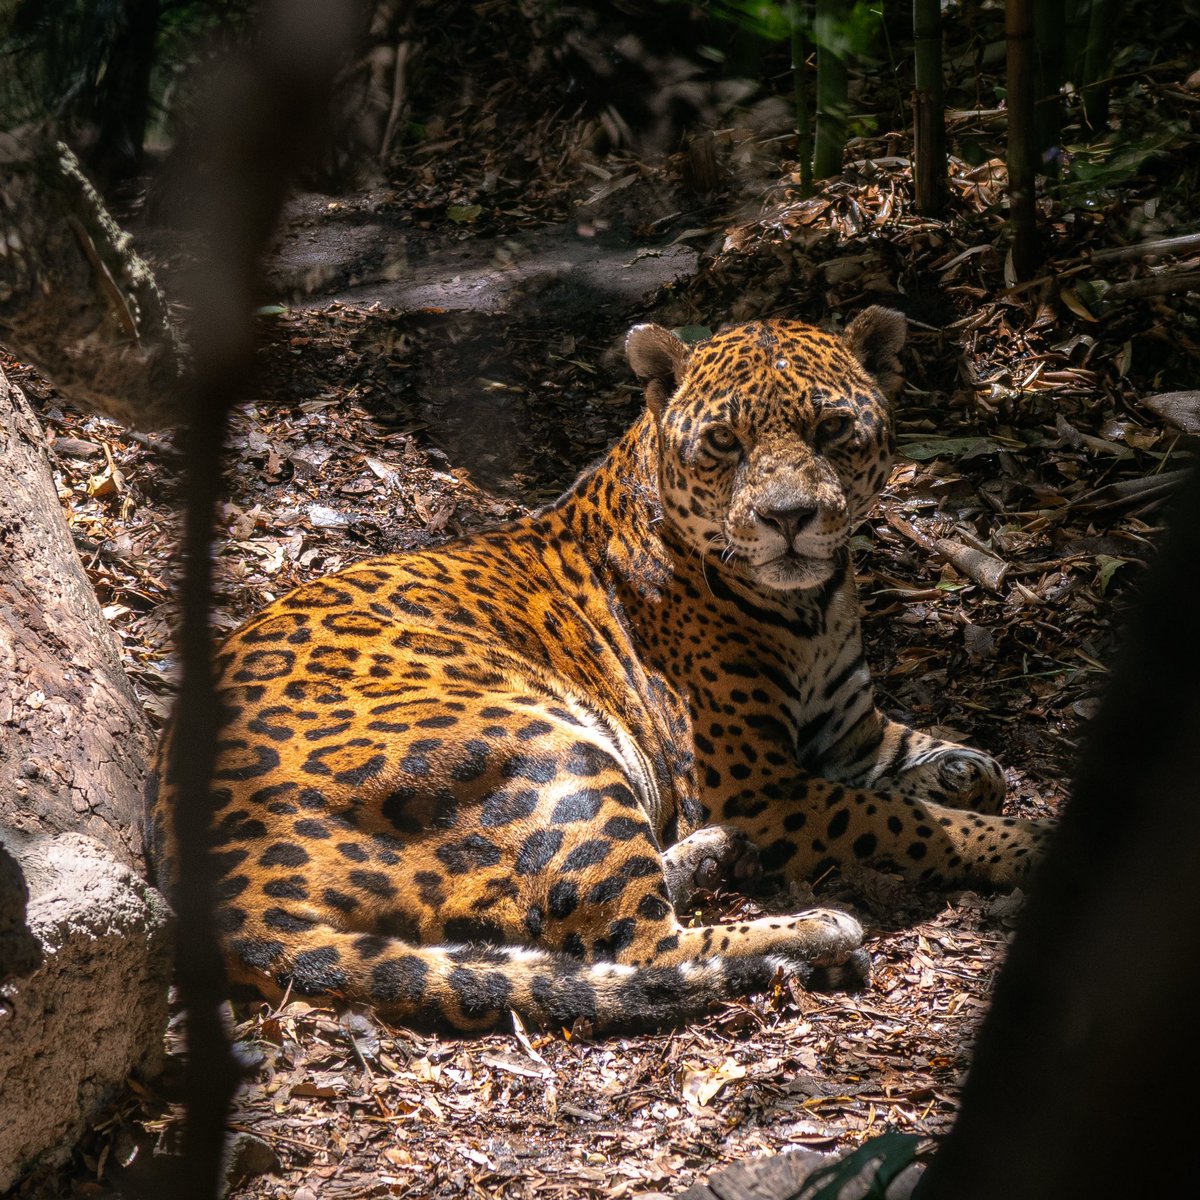 El jaguar es símbolo de poder en algunas culturas latinoamericanas y guardián de la selva. Su majestuosidad nos conecta con la naturaleza en su forma más pura. 🌿🐆